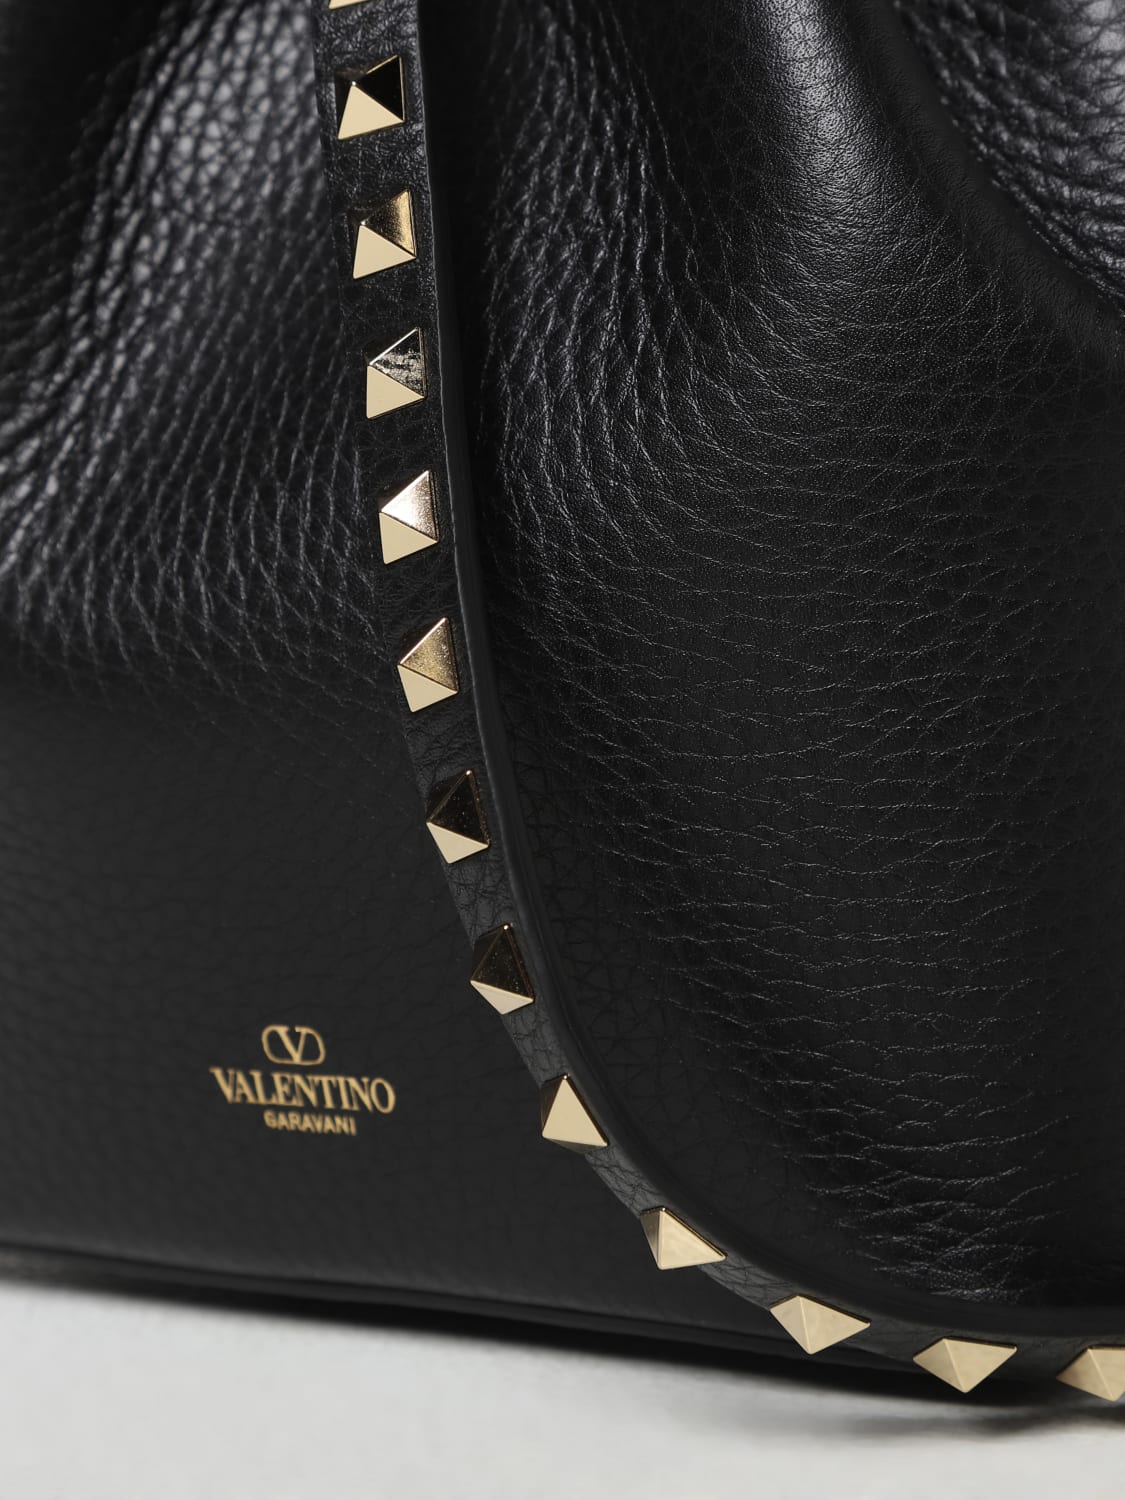 VALENTINO GARAVANI Rockstud textured-leather tote